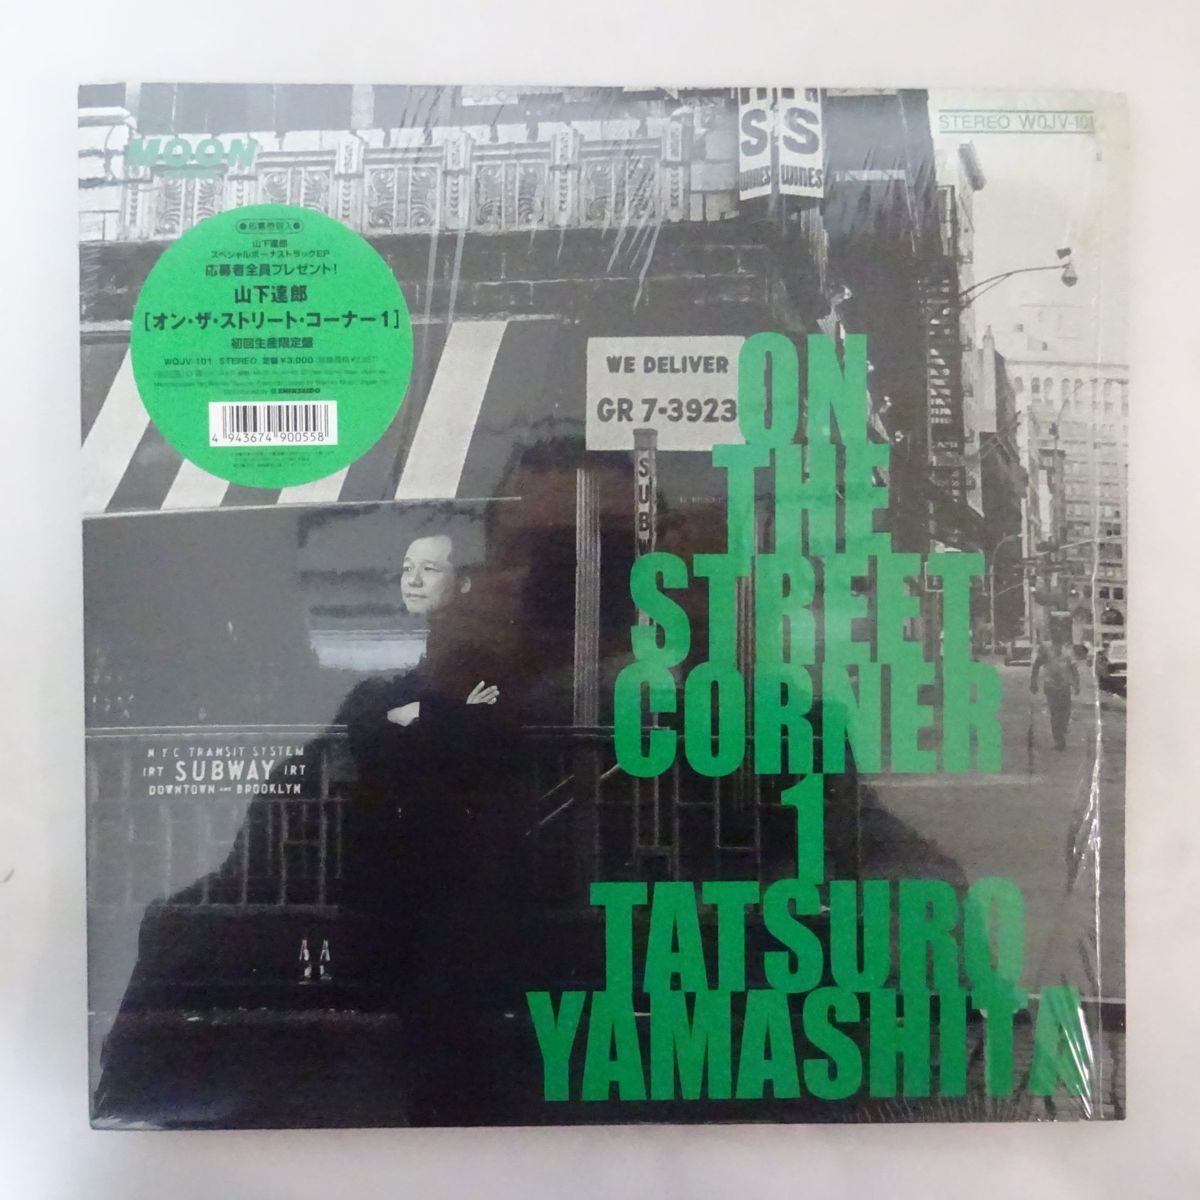 13054764;【シール帯/シュリンク/重量盤/美品/美盤】山下達郎 Tatsuro Yamashita / On The Street Corner 1